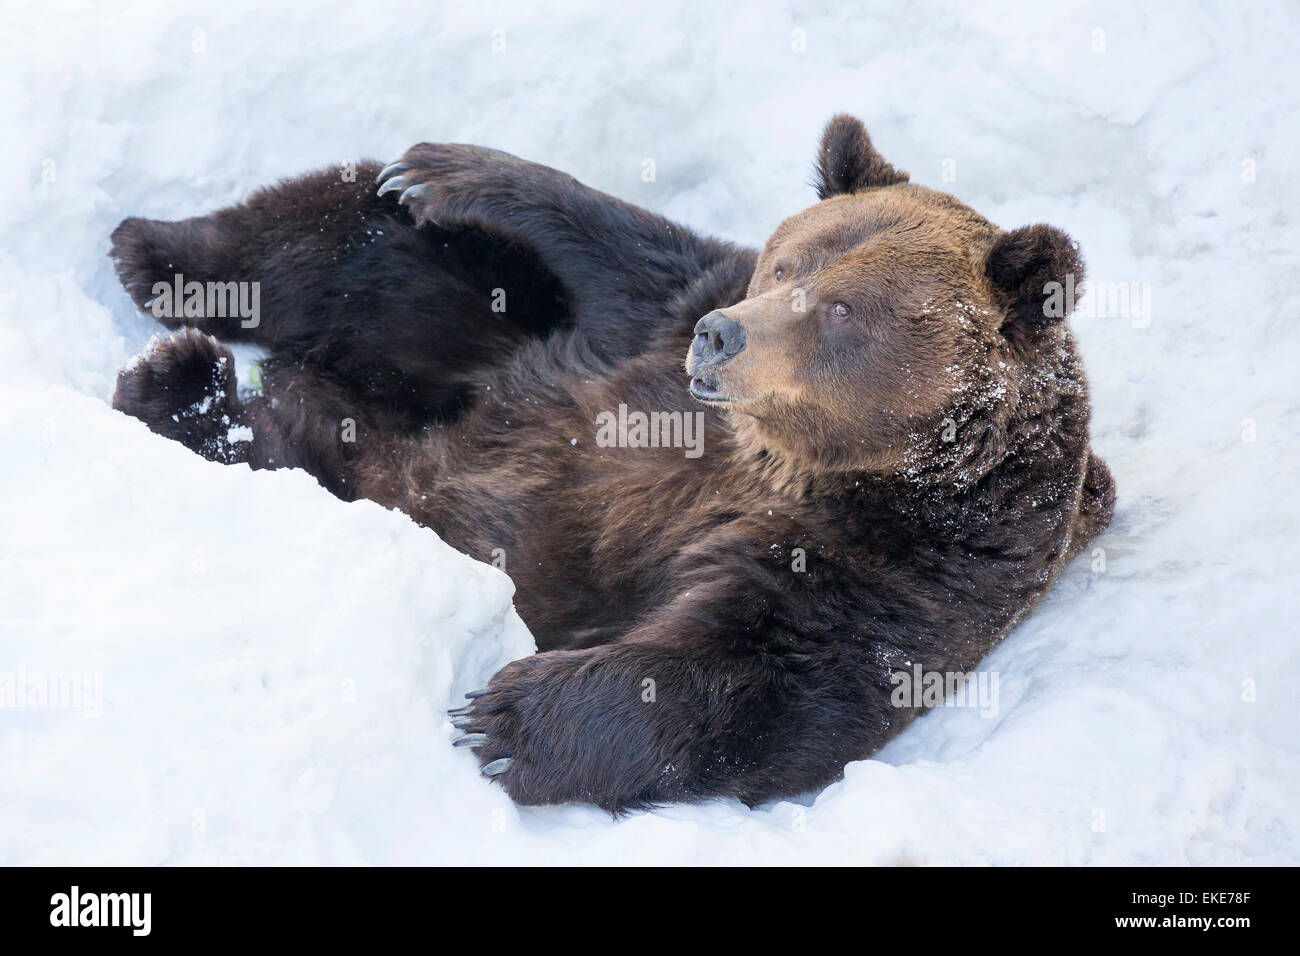 Oso grizzly (Ursus arctos horribilis) tendido en la nieve tras salir de una hibernación durante el invierno Foto de stock